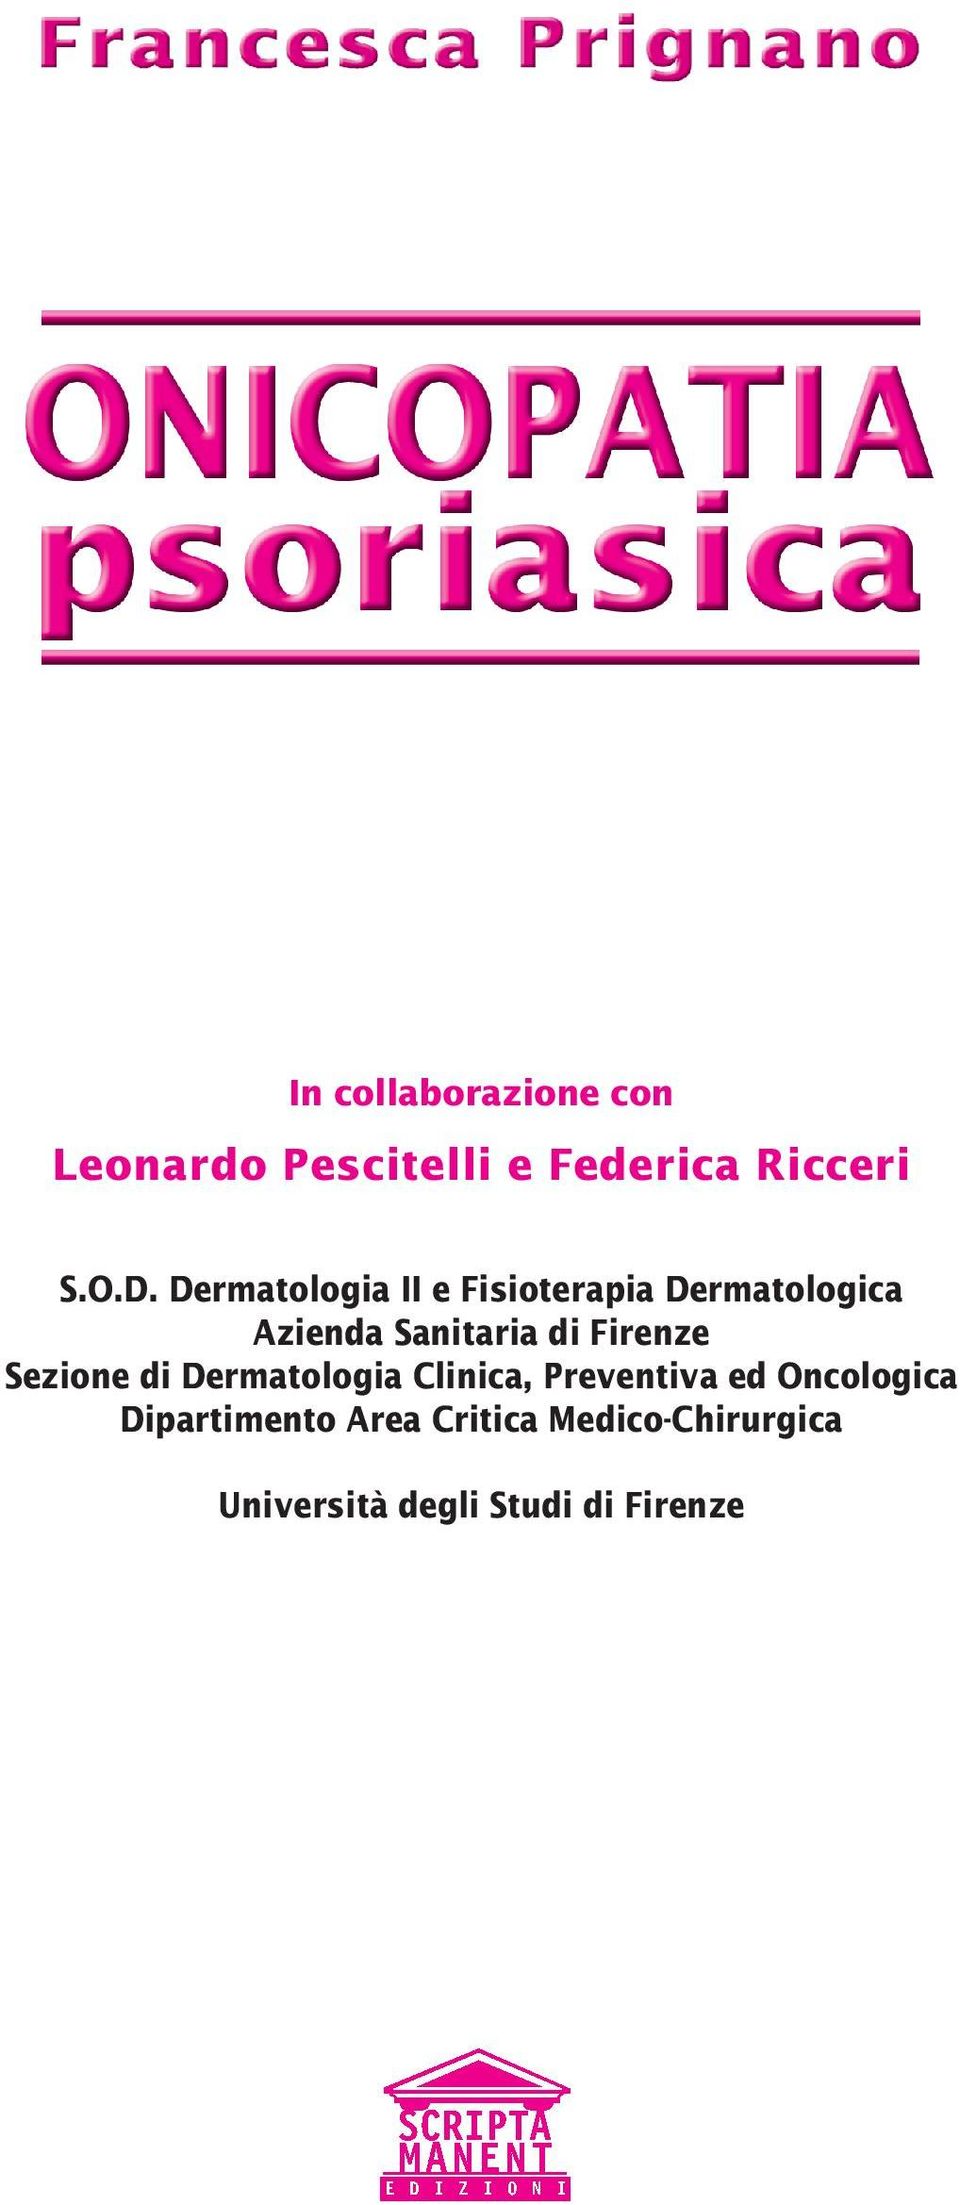 Firenze Sezione di Dermatologia Clinica, Preventiva ed Oncologica